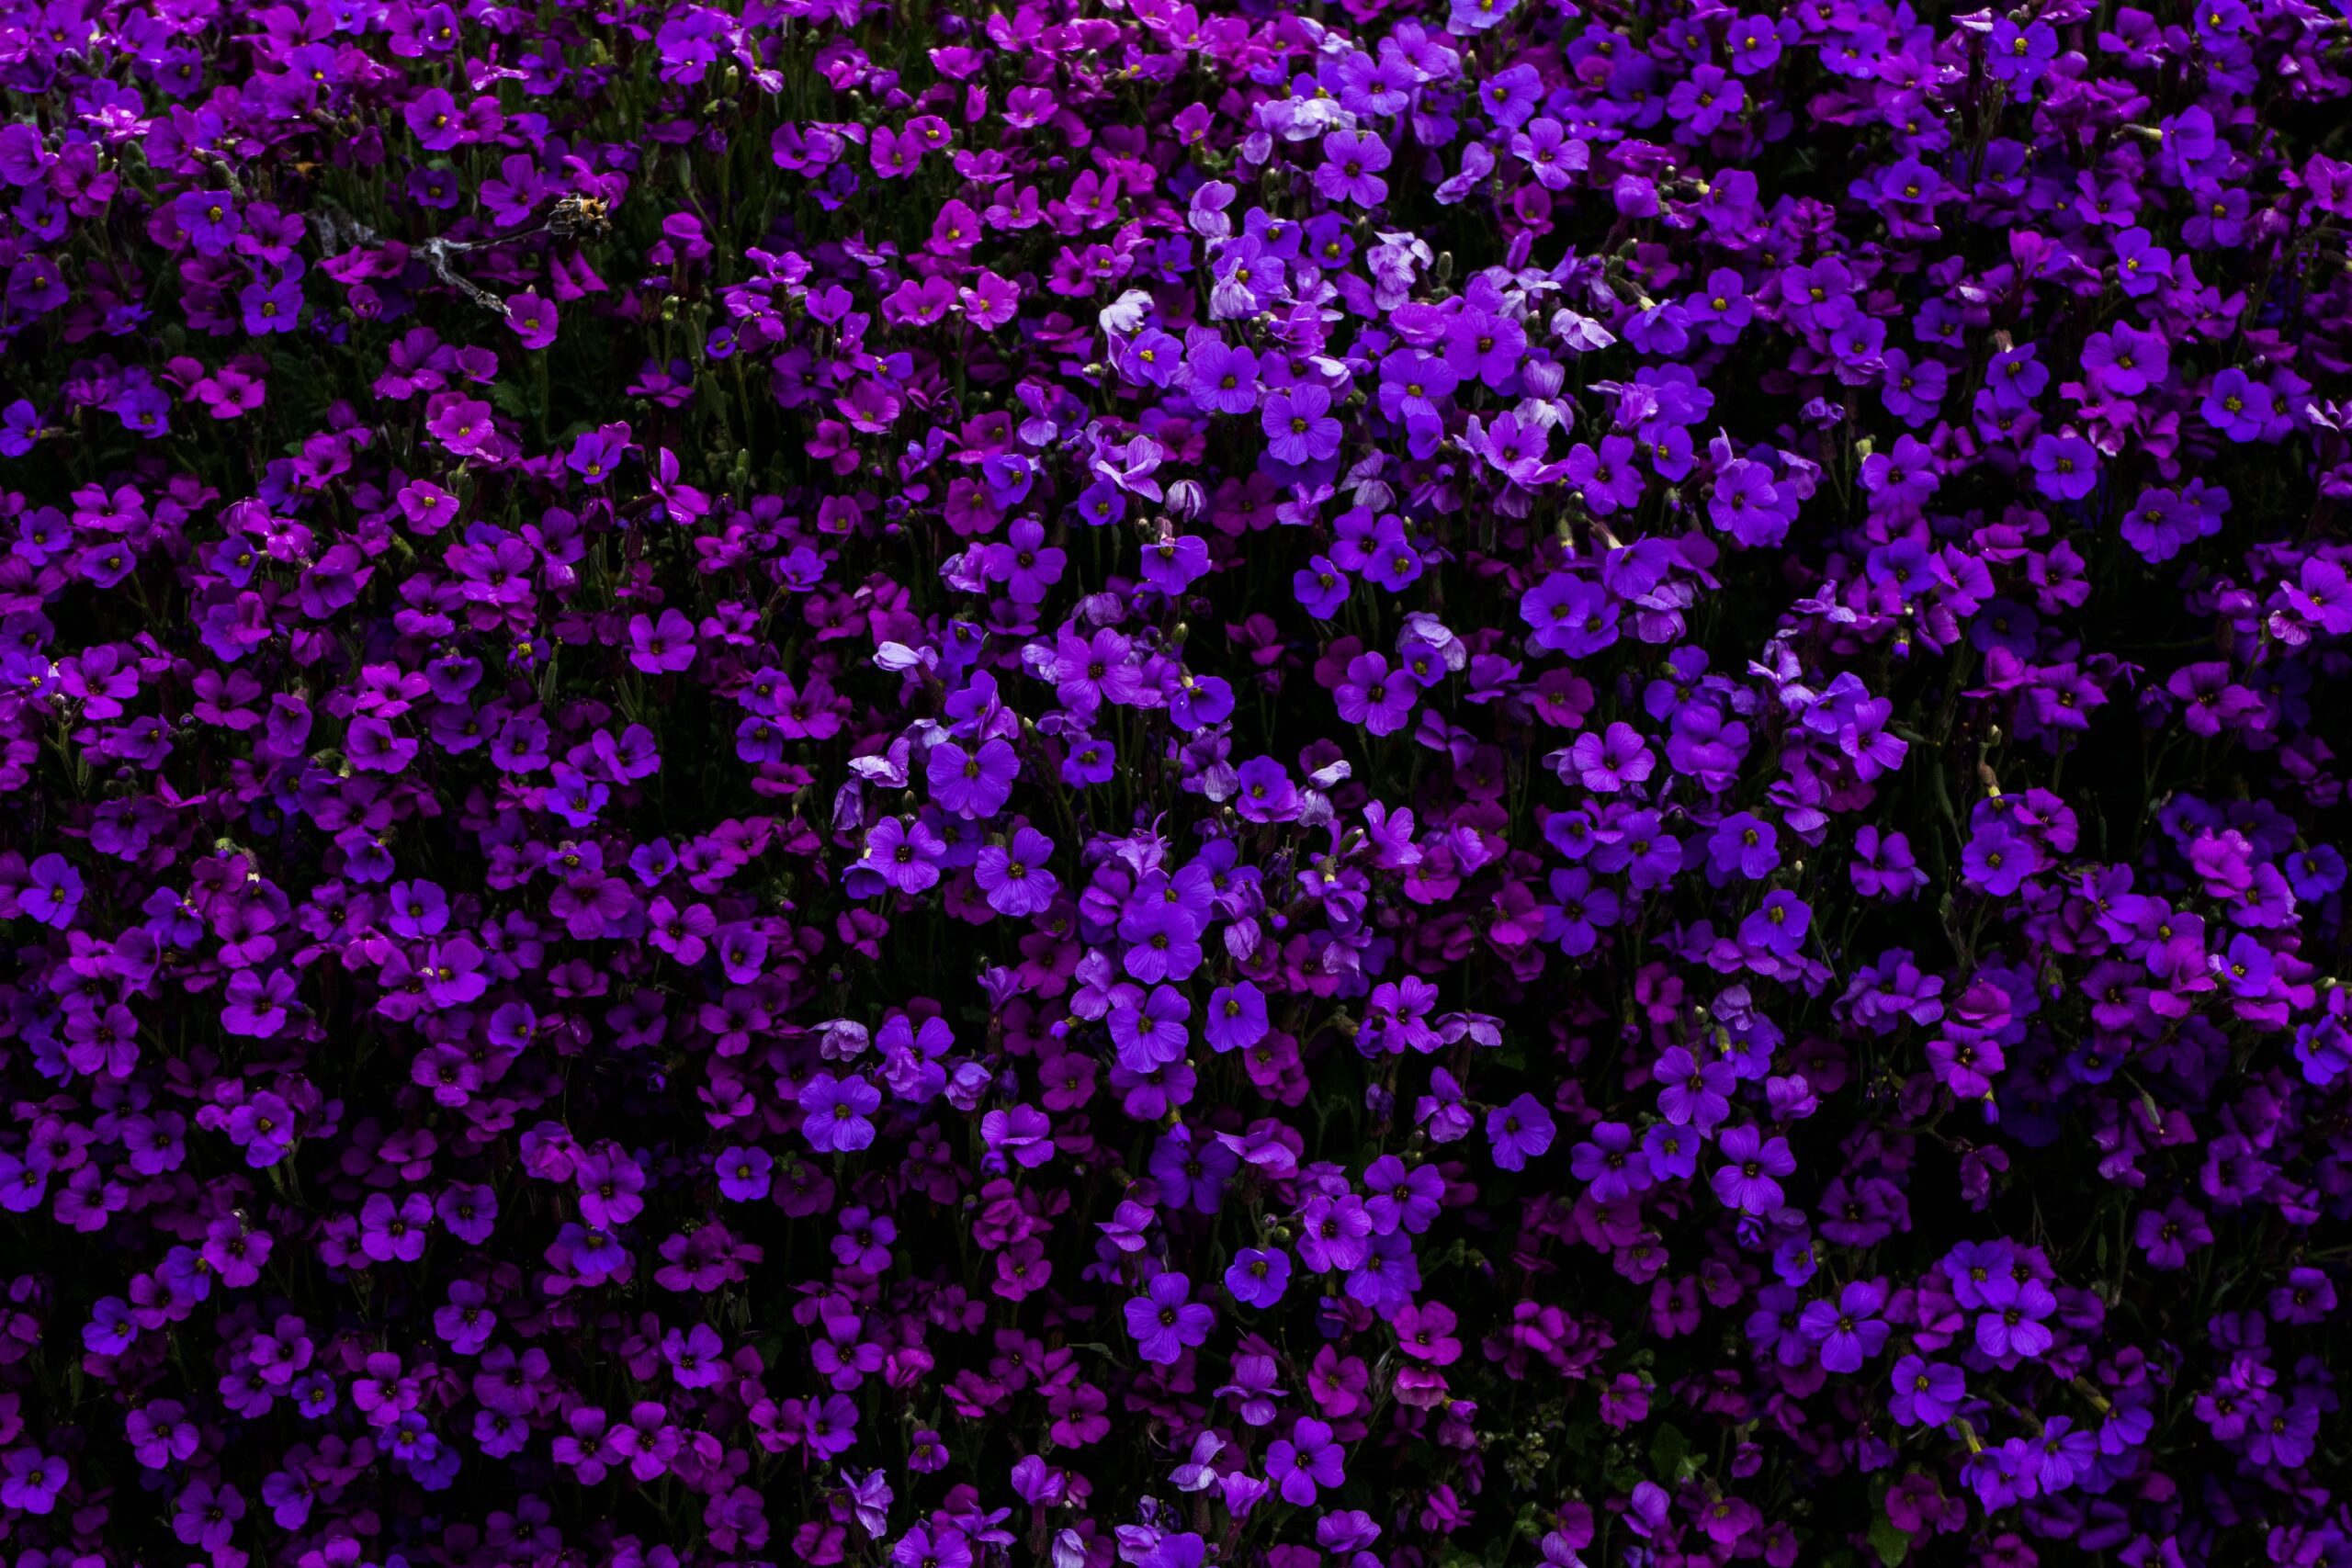 purple flowered hedge plants